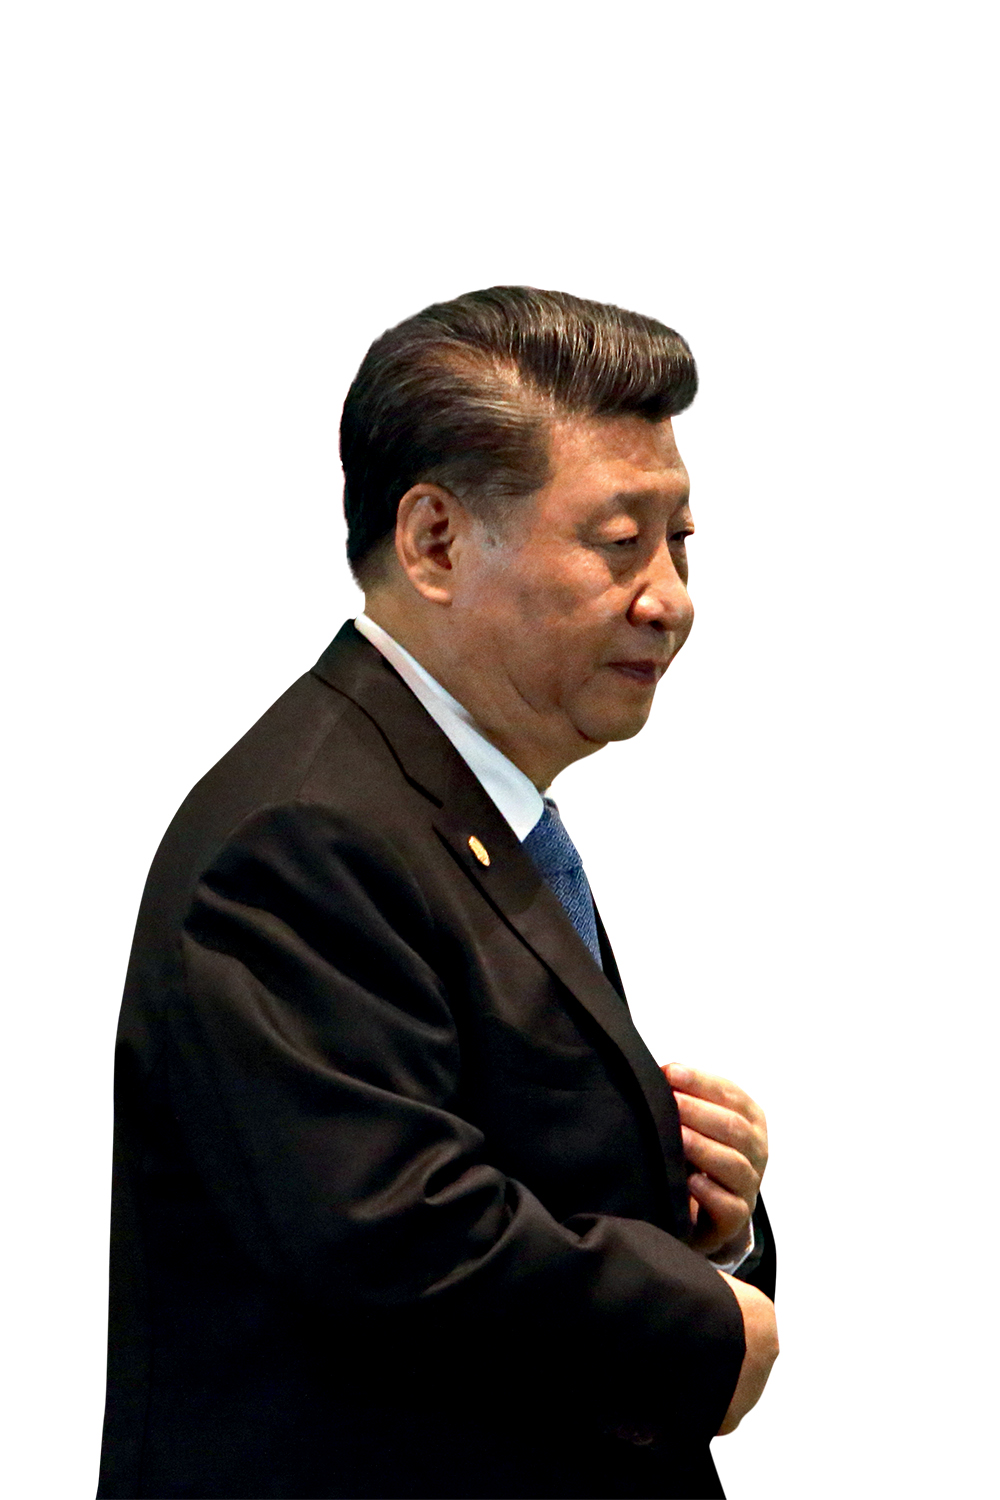 SAI DA FRENTE - Xi Jinping: de censura a espionagem, vale tudo na escalada para ser o primeiro do mundo -